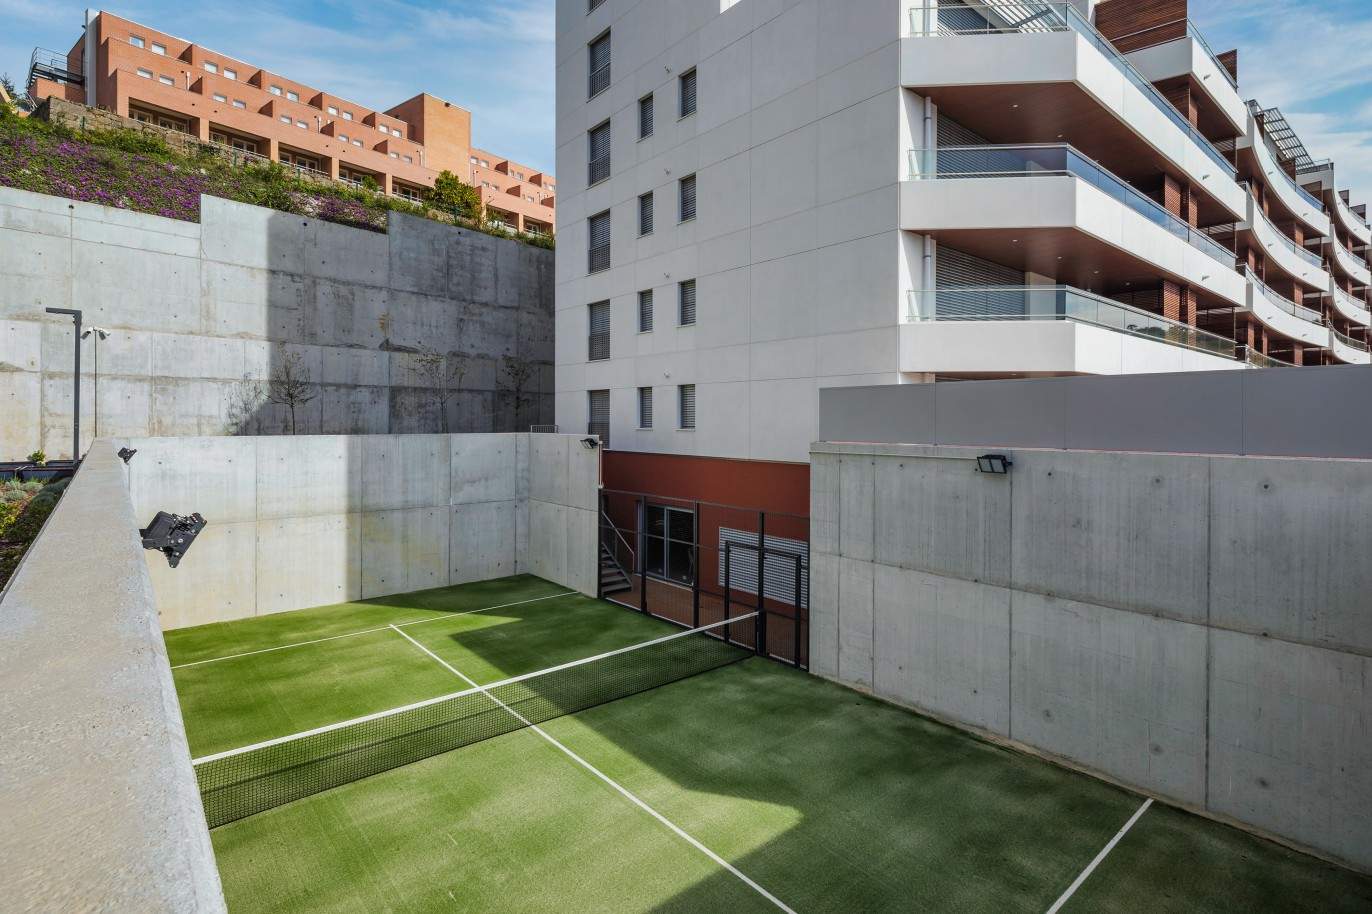 Penthouse nueva de 2 dormitorios con piscina y vistas al río, Oporto, Portugal_211755